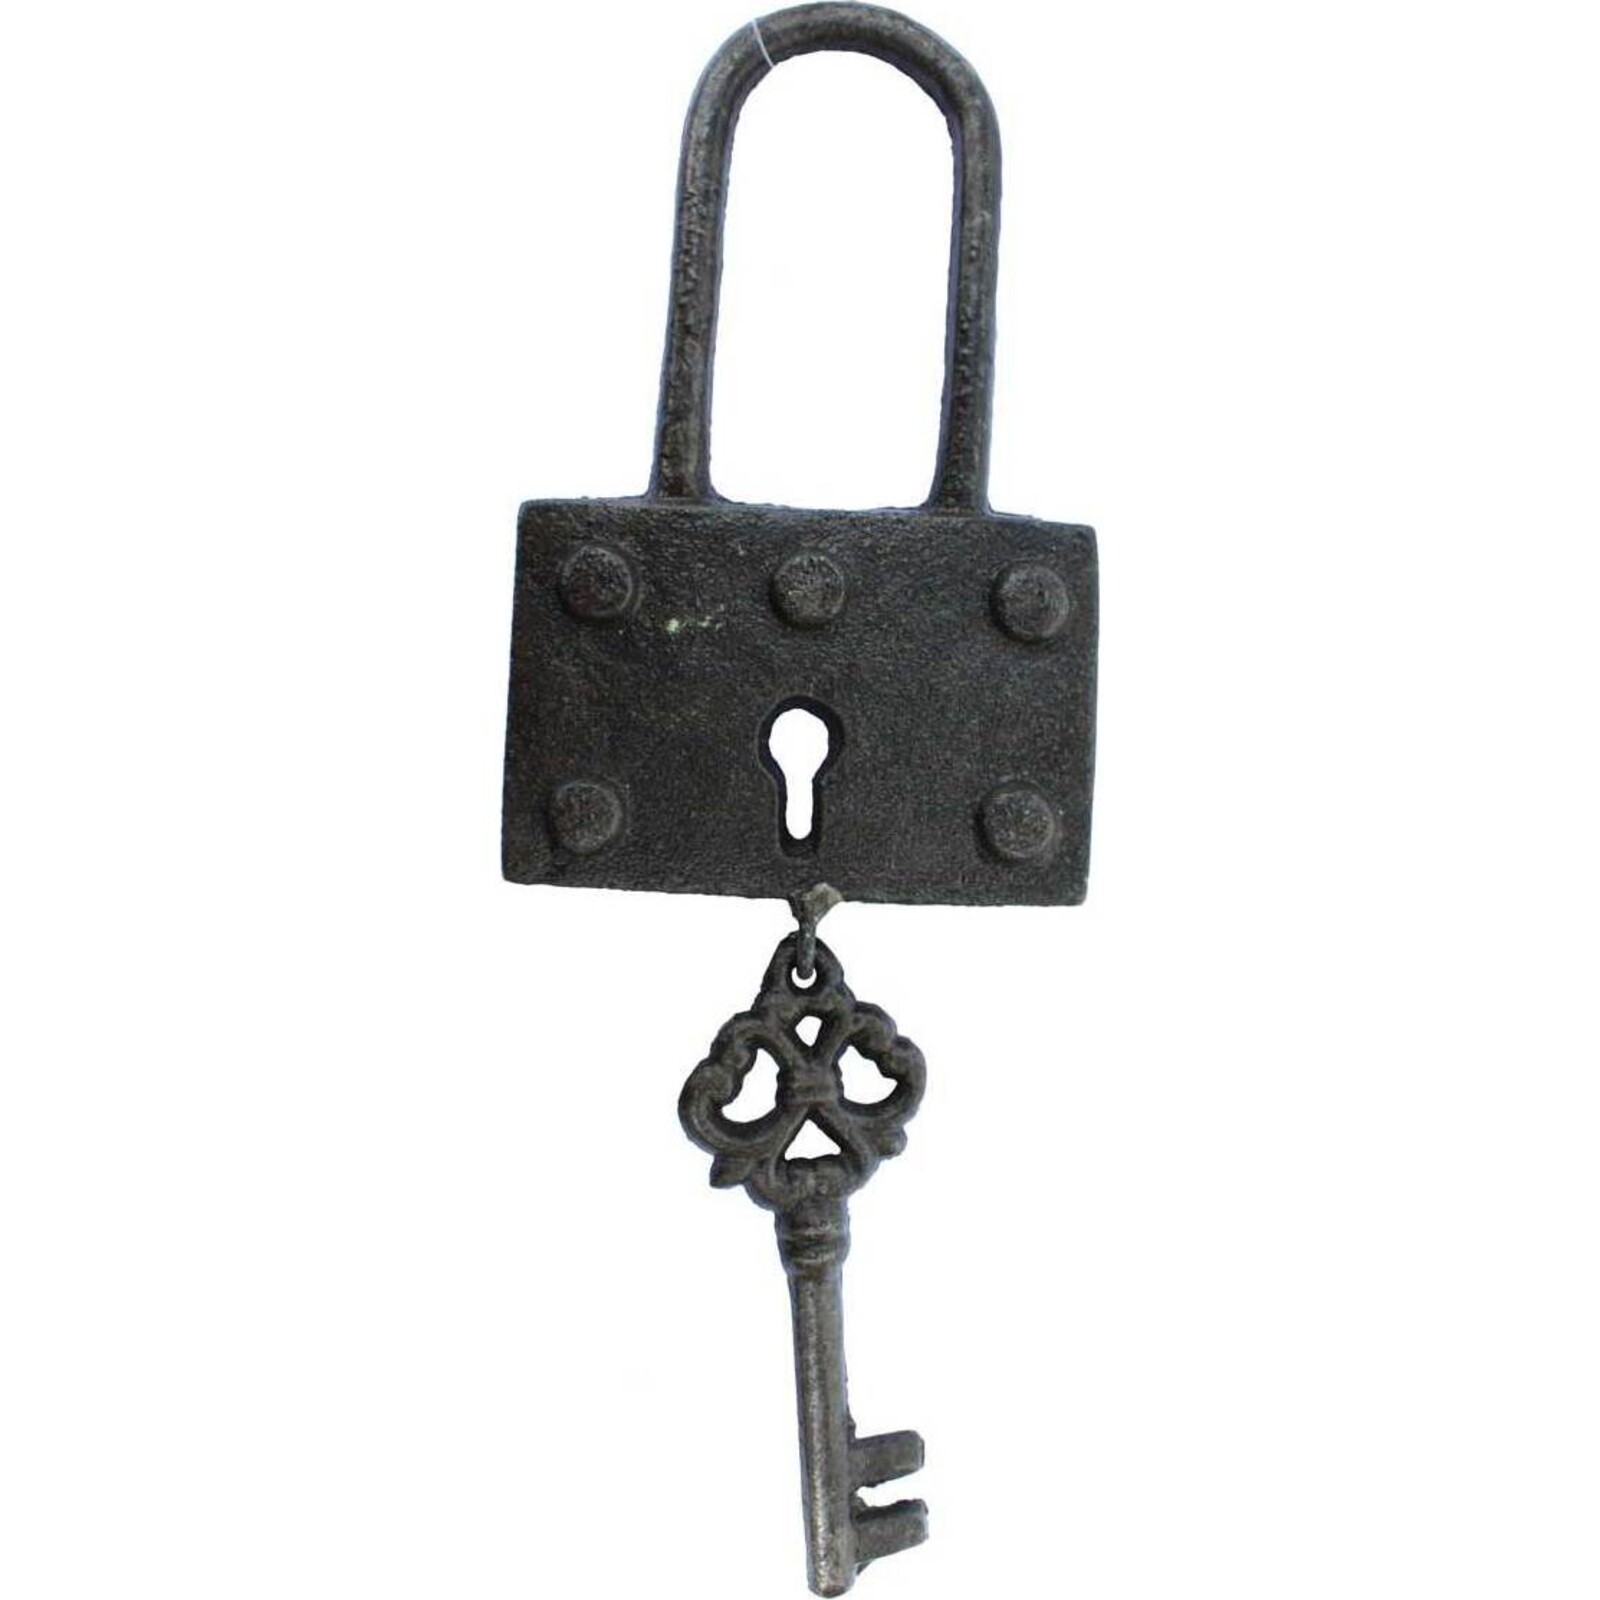 Hanging Key - Old Padlock